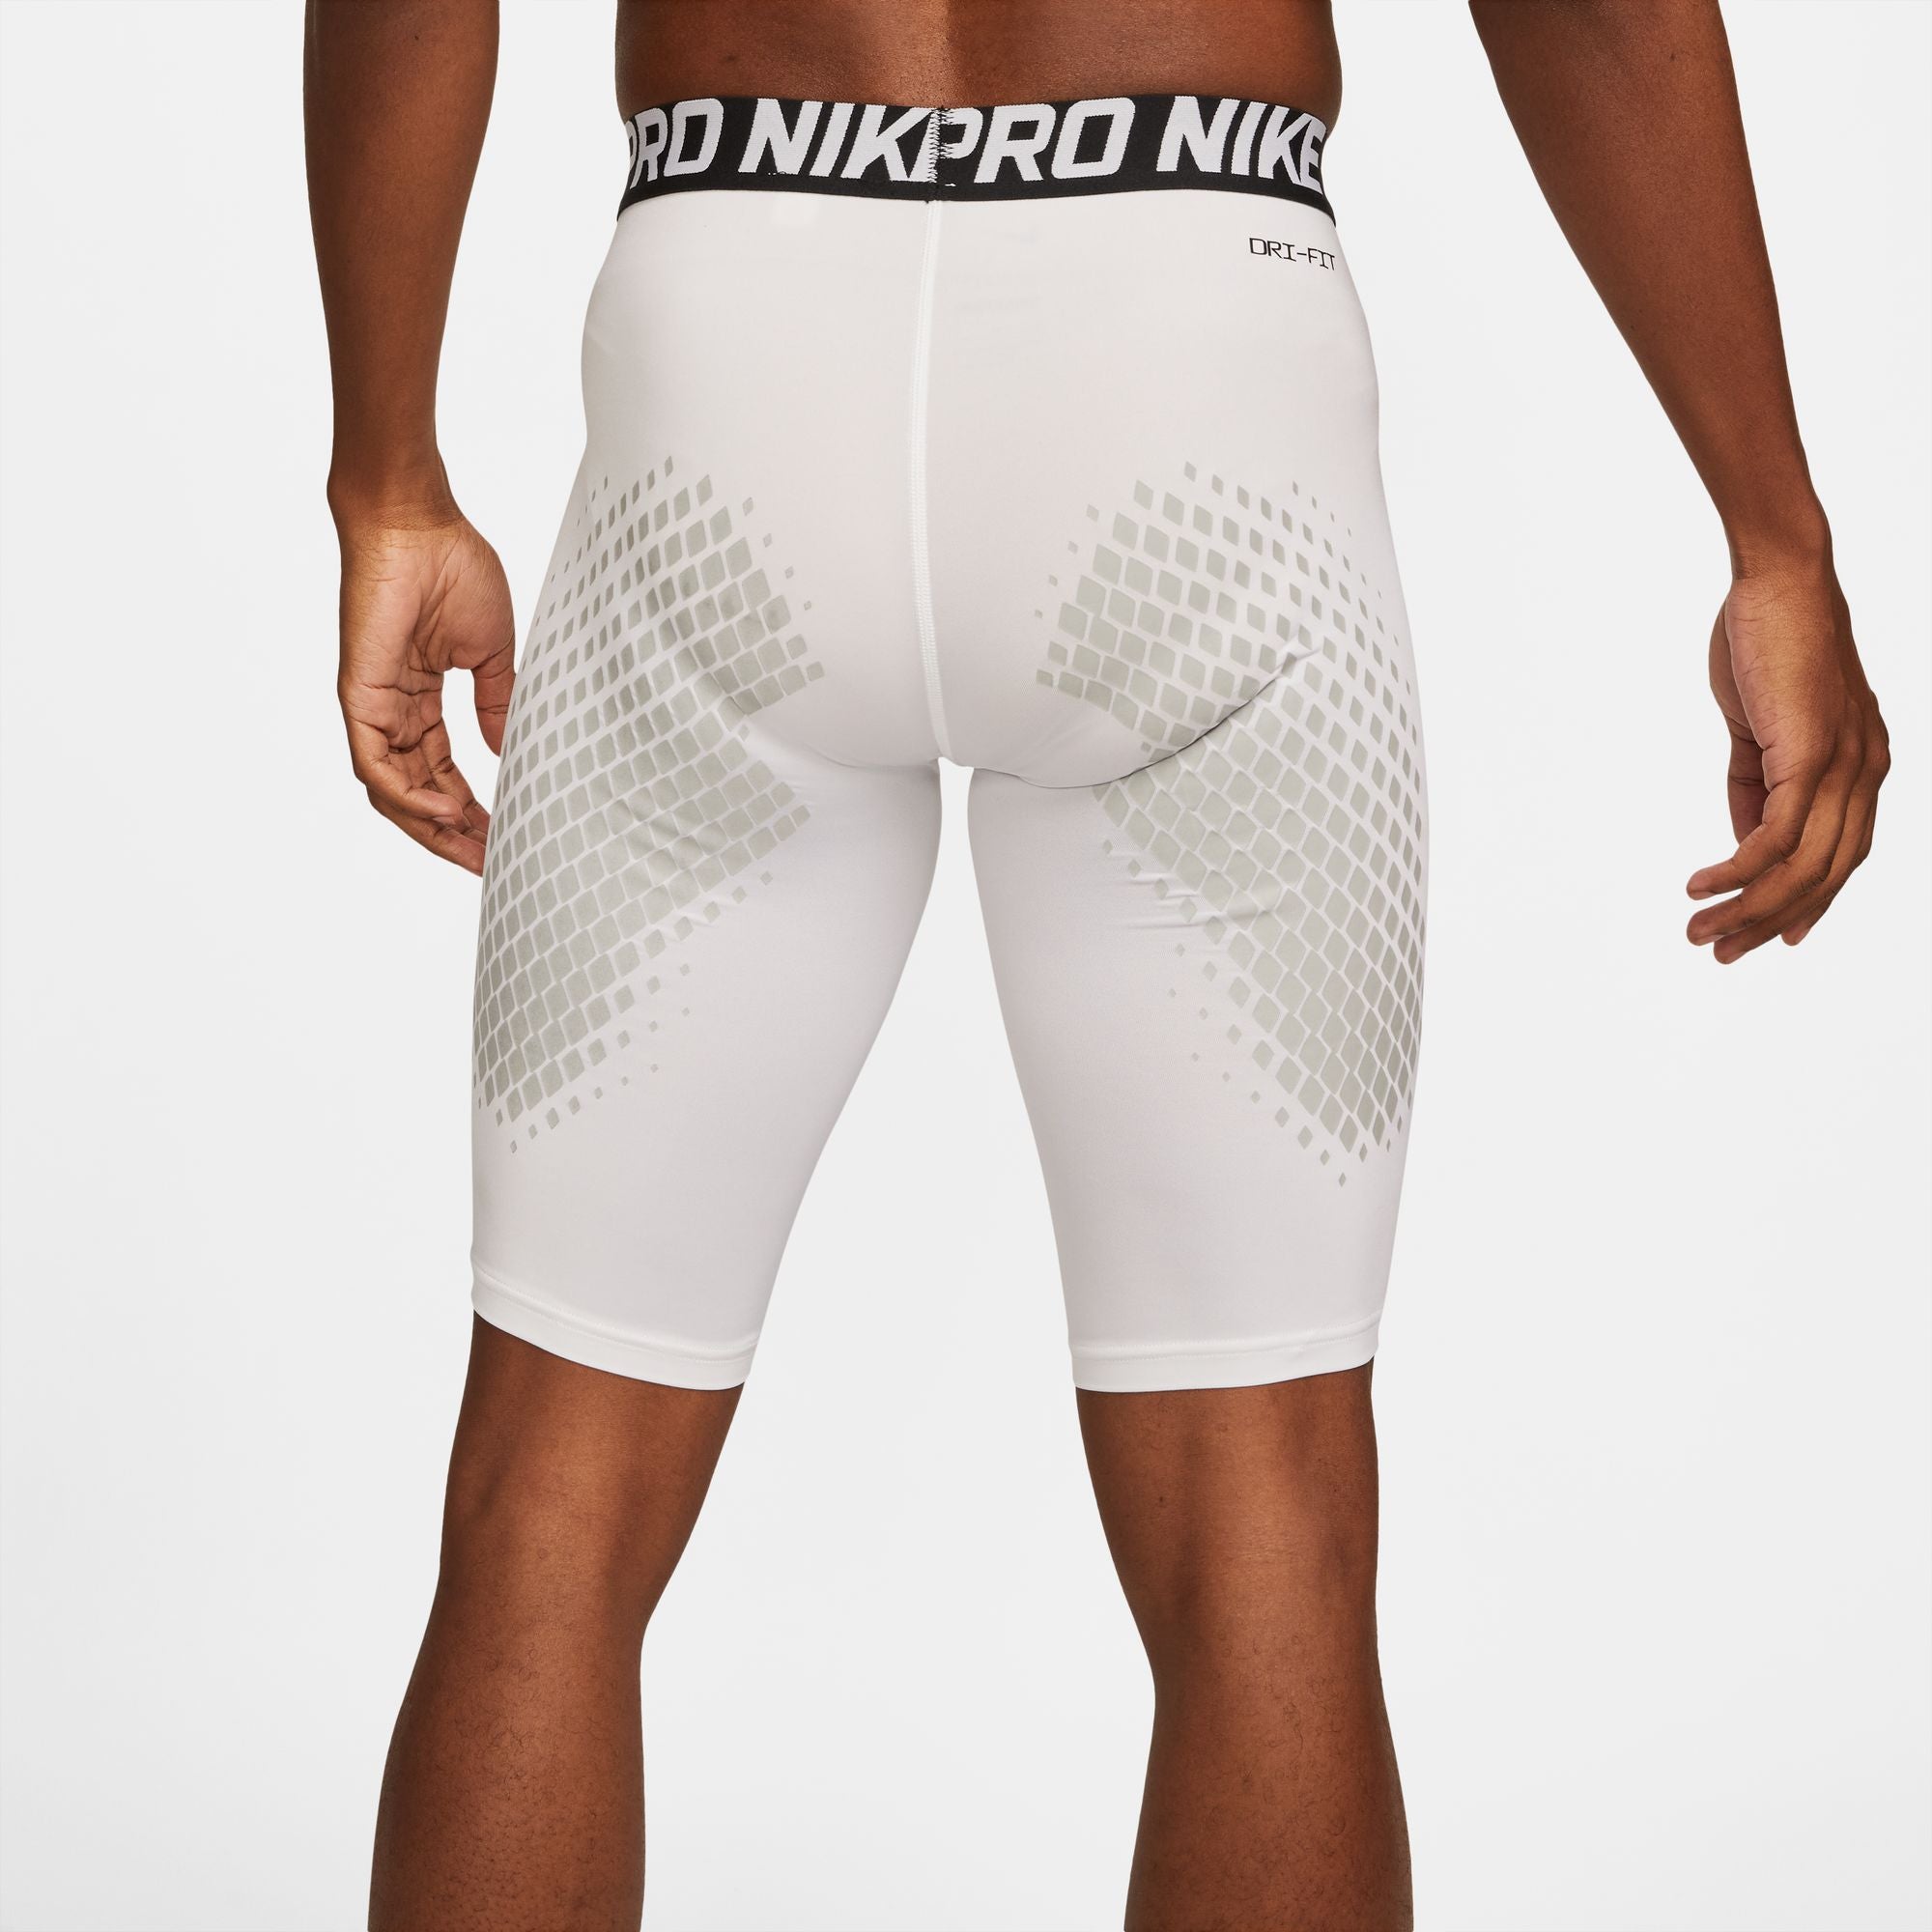 Nike Pro Mens Sliding Shorts